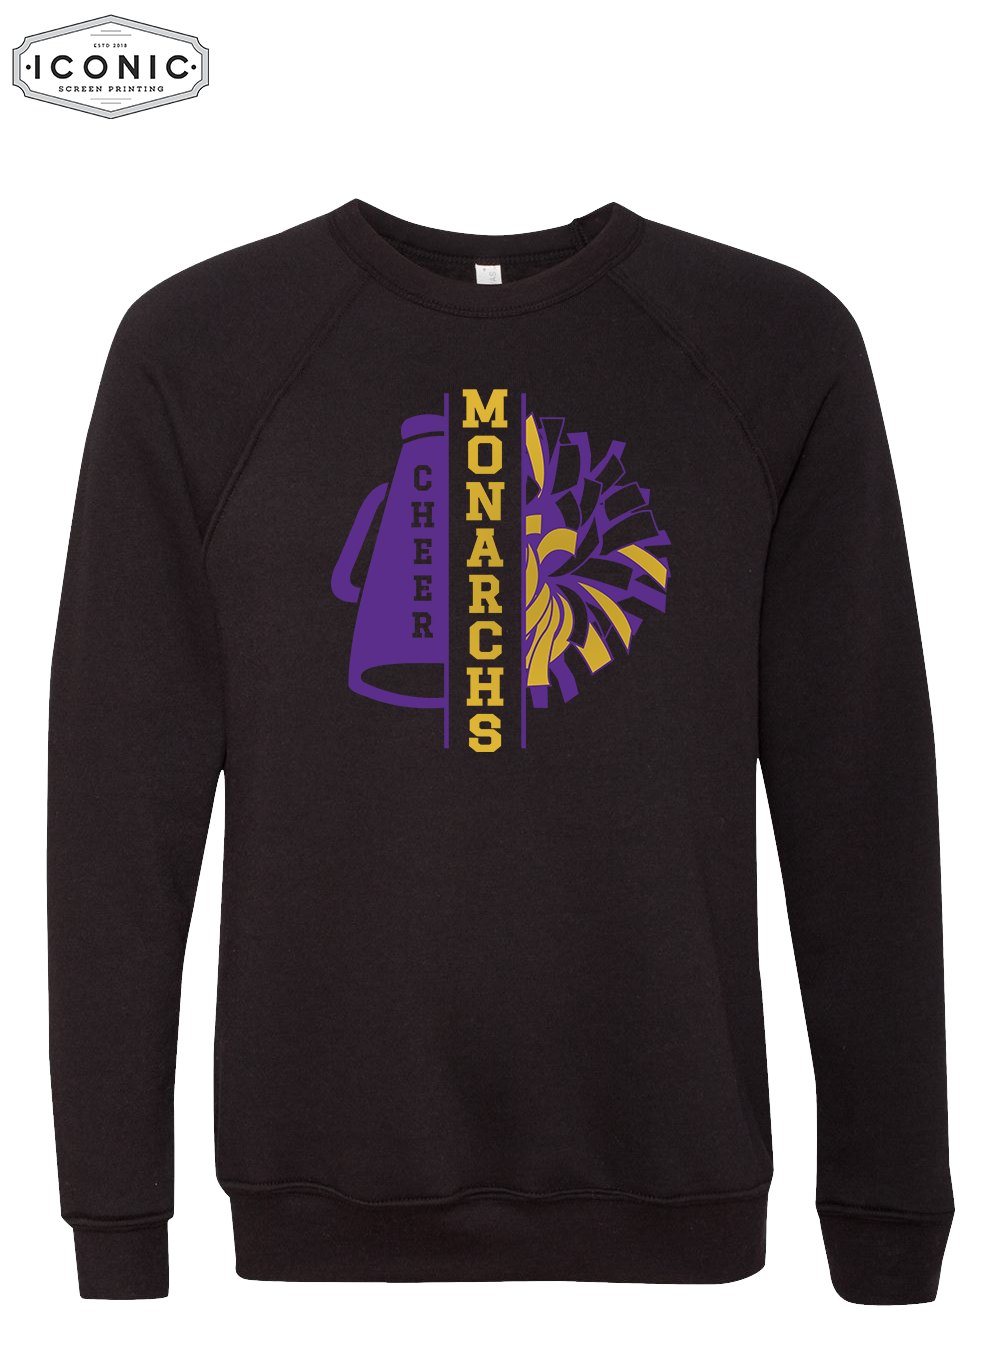 Monarch Cheer Pom (Glitter Ink) - Unisex Sponge Fleece Raglan Crewneck Sweatshirt